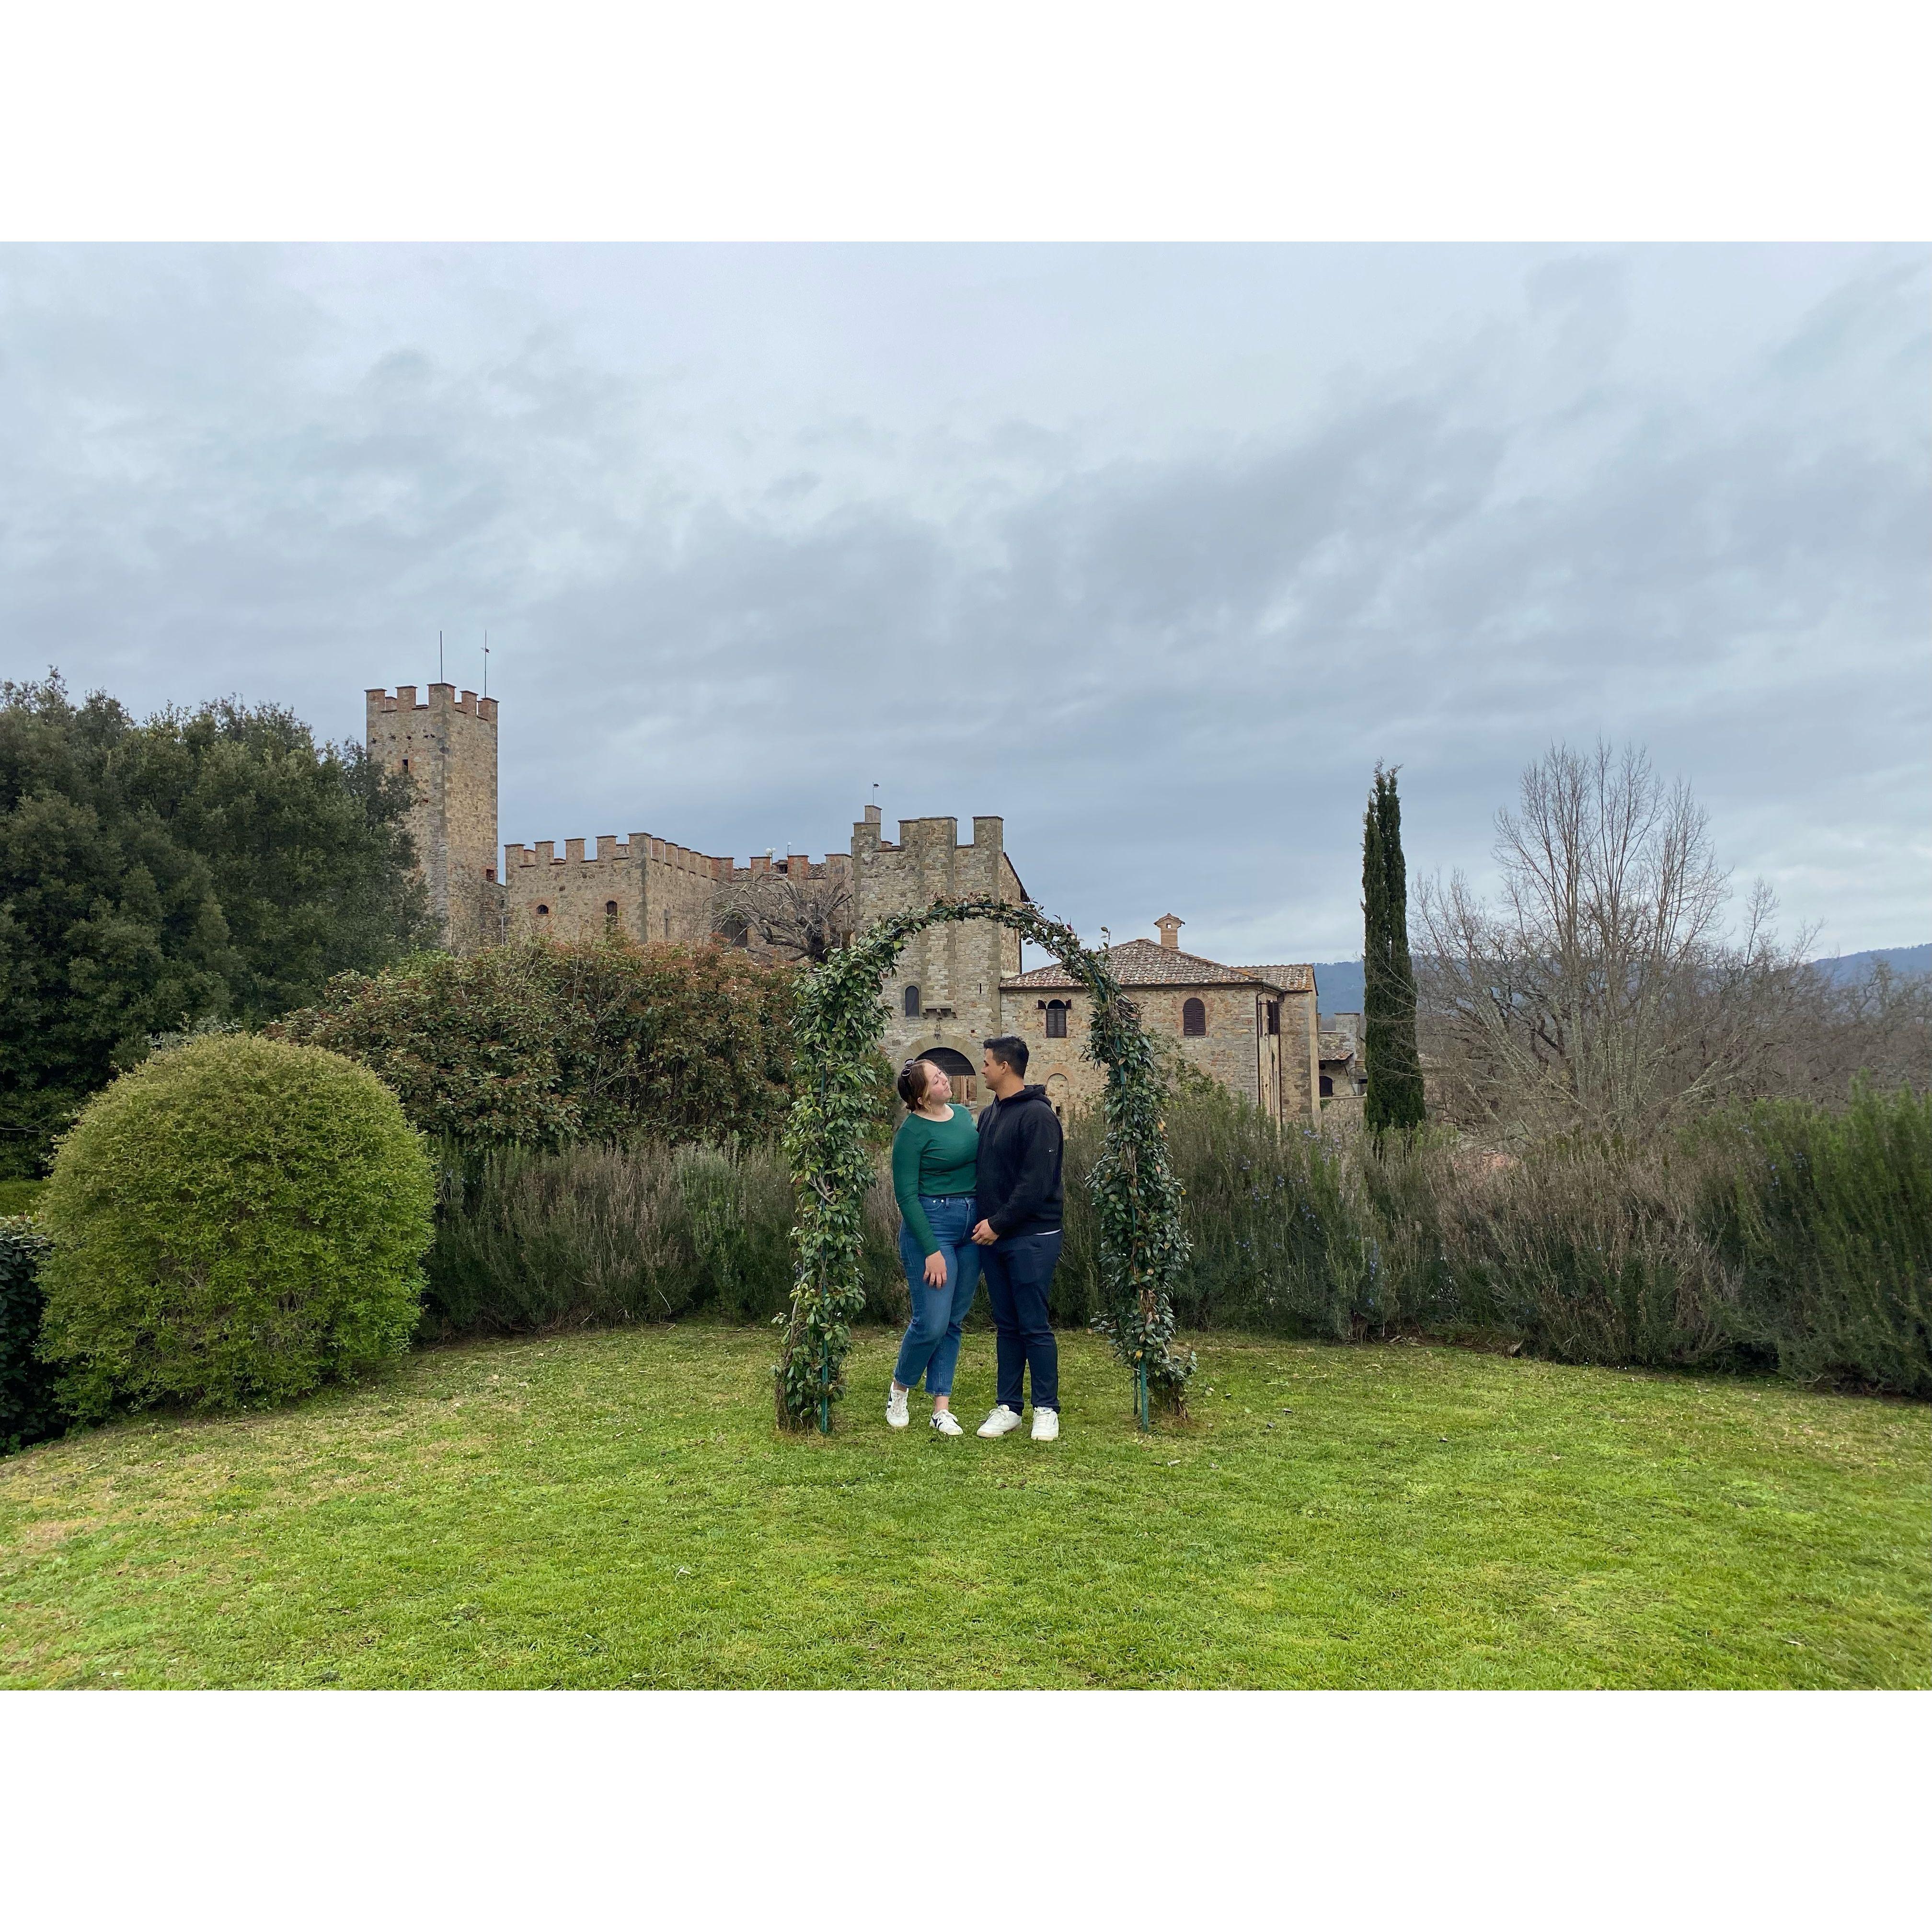 Our ceremony spot at Castello di Montalto!